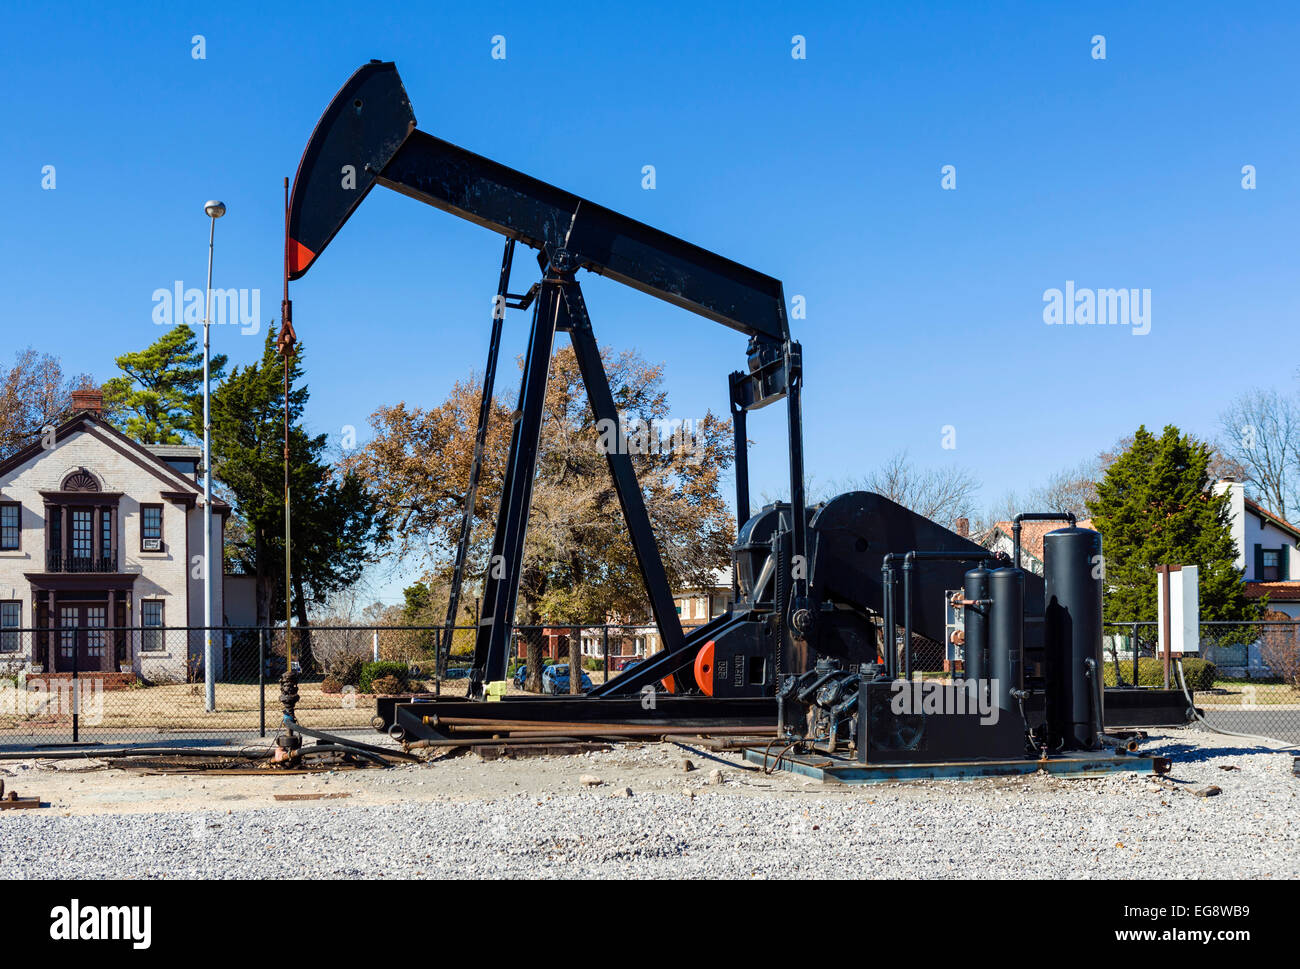 Pozo de petróleo en un entorno urbano, N Lincoln Blvd, Oklahoma City, Oklahoma, EE.UU. Foto de stock